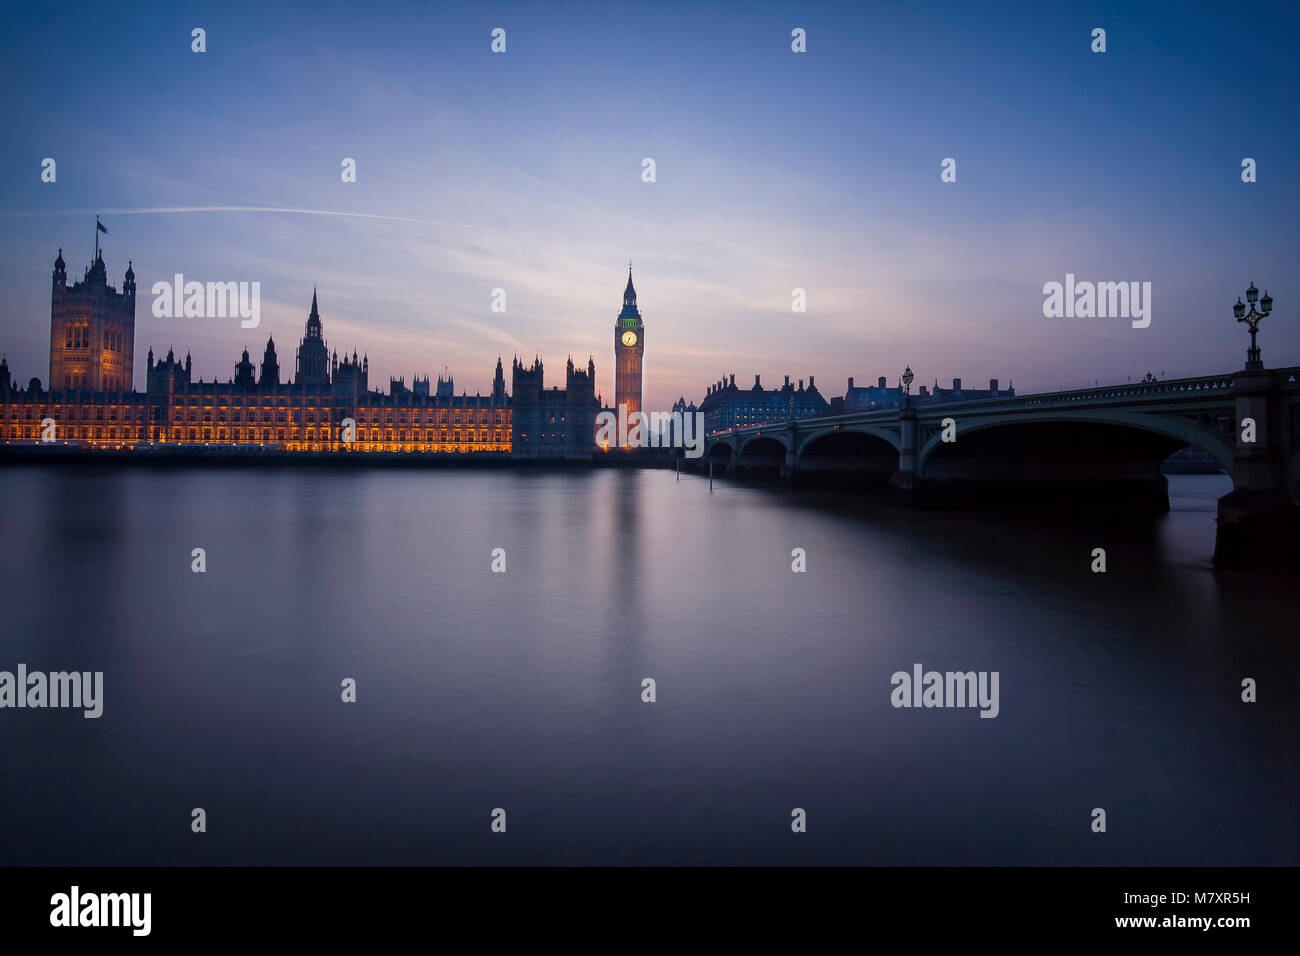 Londra, UK: il parlamento di Westminster con Thames in primo piano dopo il tramonto Foto Stock